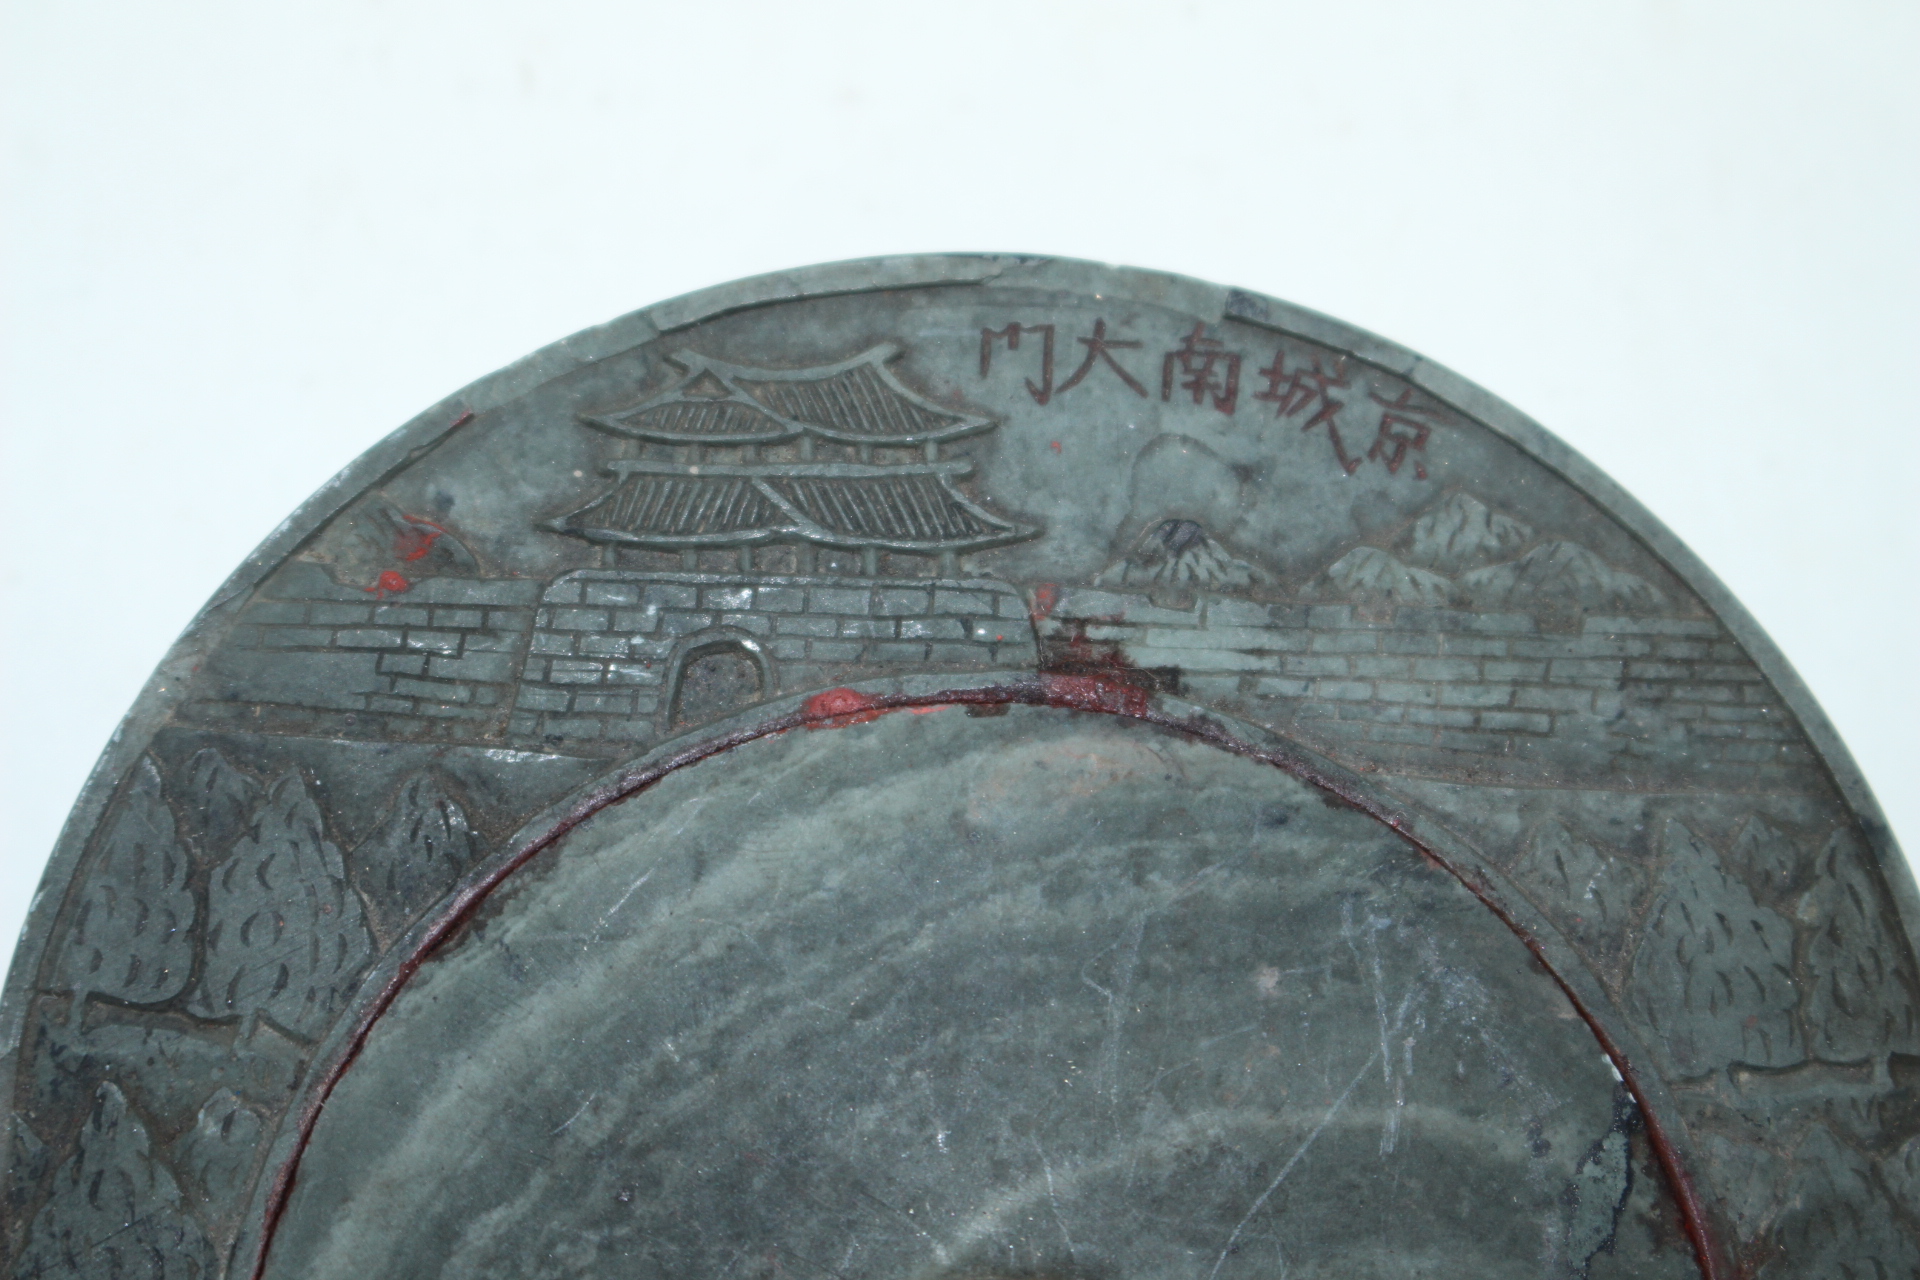 구한말 경성남대문(京城南大門)이 조각된 경면주사용 벼루